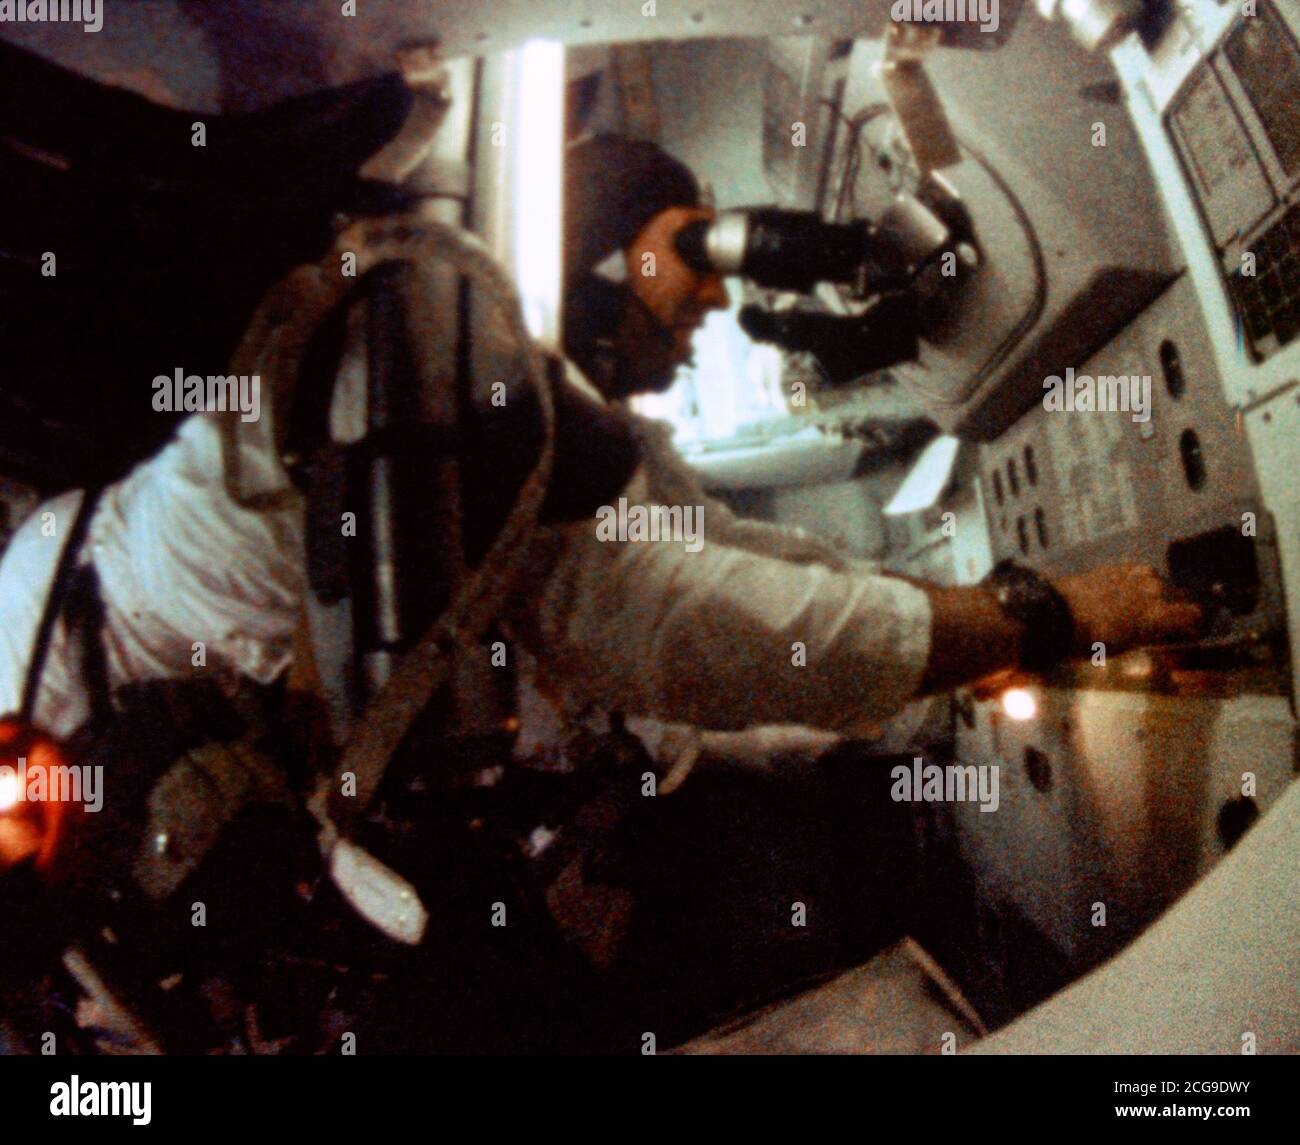 (21-27 dic. 1968) --- astronauta James A. Lovell Jr., Apollo 8 modulo di comando pilota, si è visto all'Apollo 8 veicoli spaziali del comando del modulo di orientamento e navigazione stazione durante l' Apollo 8 orbita lunare missione. Questa foto è stata scattata da 16mm di pellicola cinematografica. Foto Stock